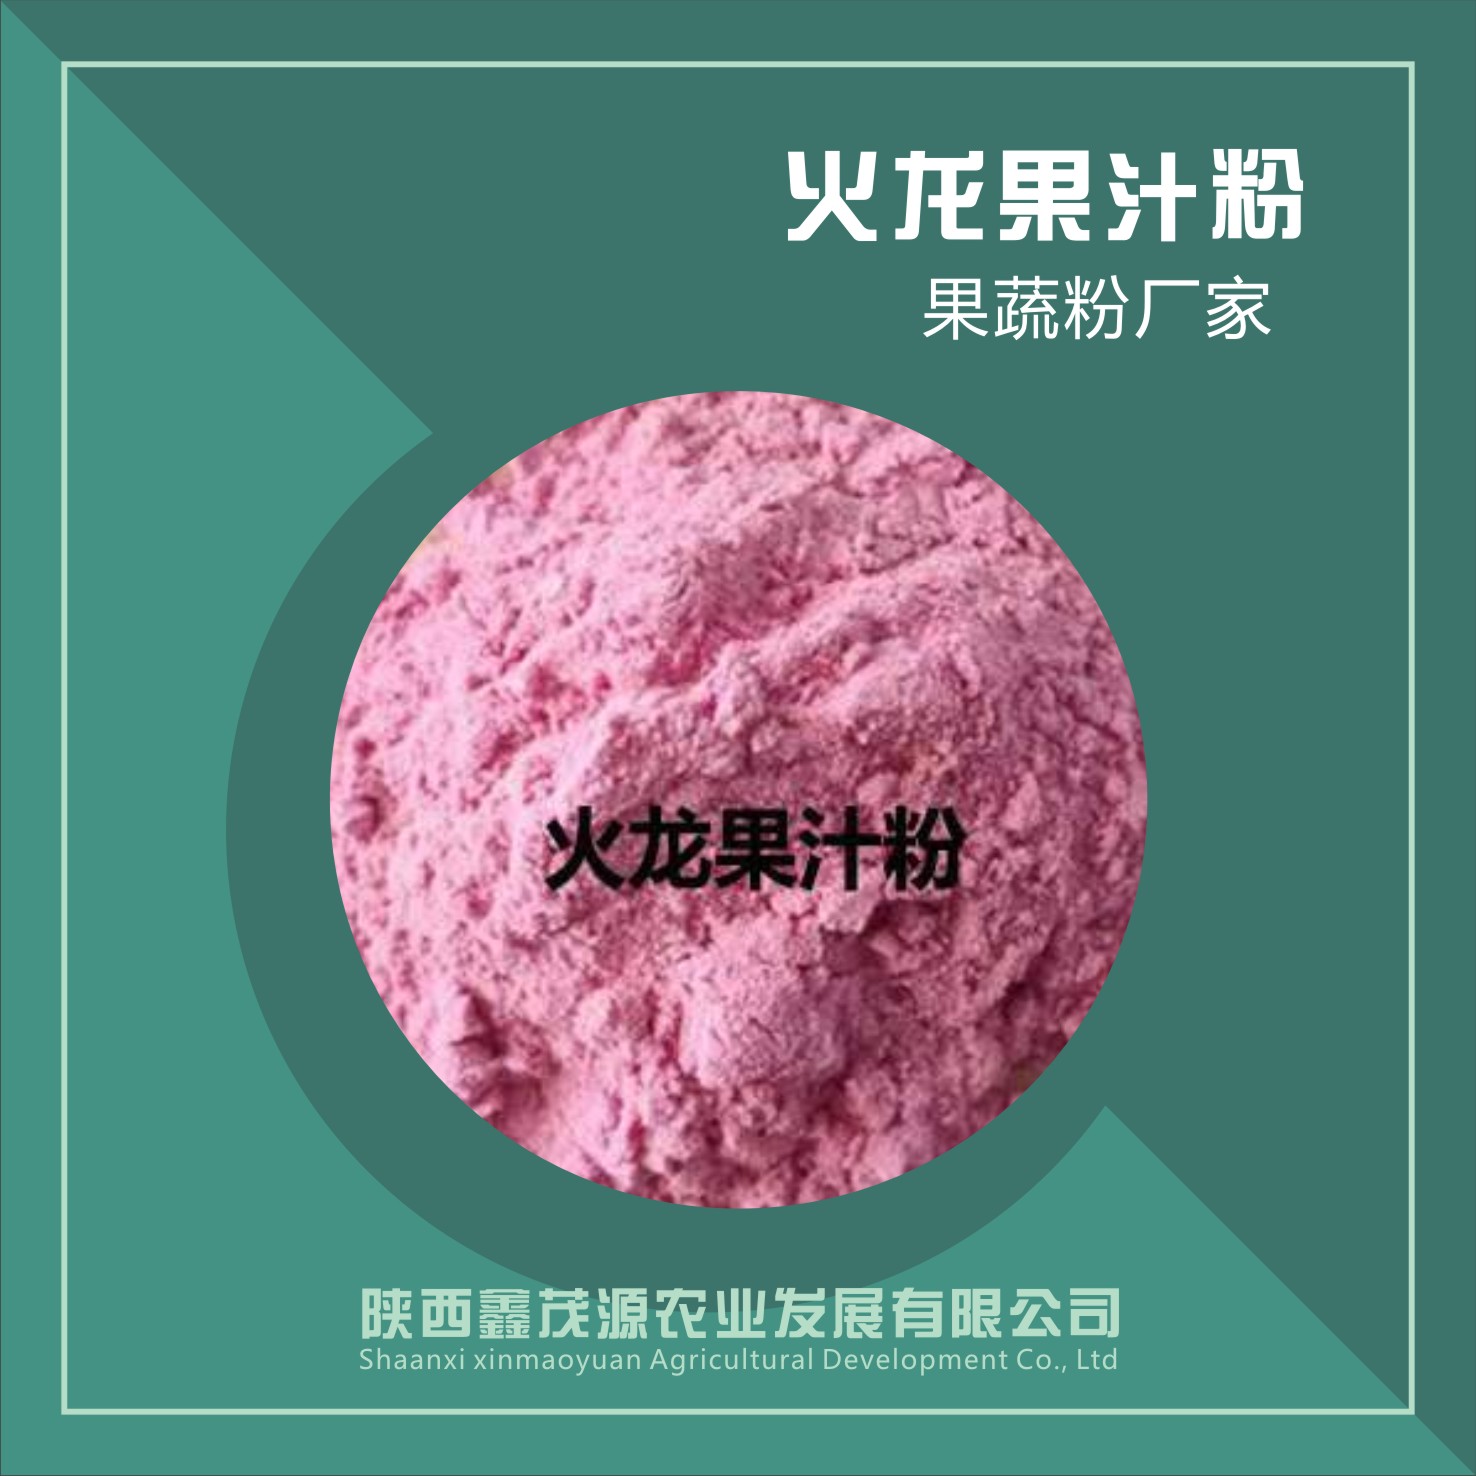 火龙果汁粉,Pitaya juice powder